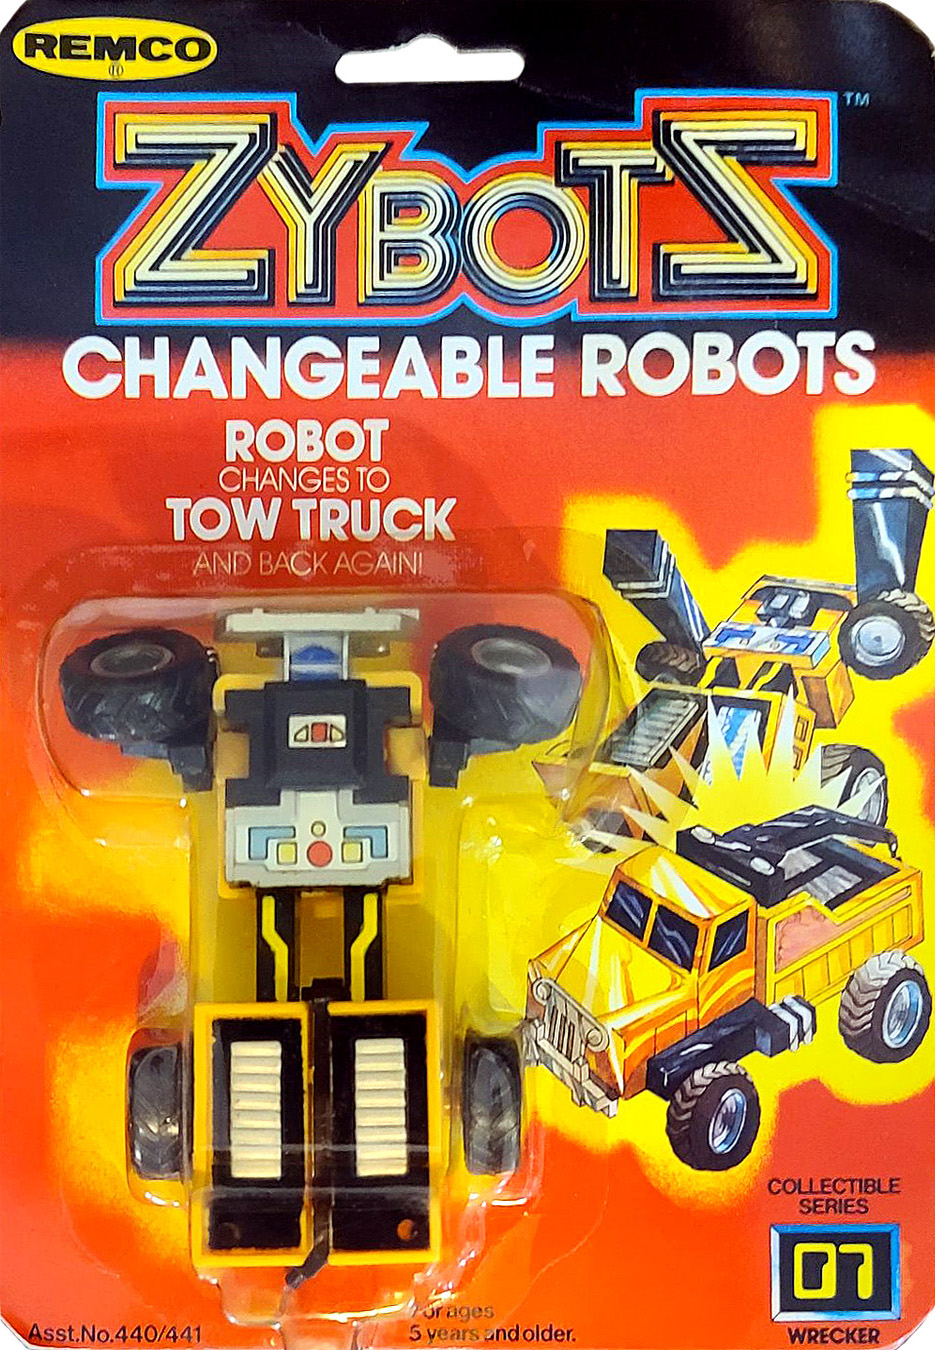 MR- 1984 Zybots Remco Action Figure Gobot- Tonka